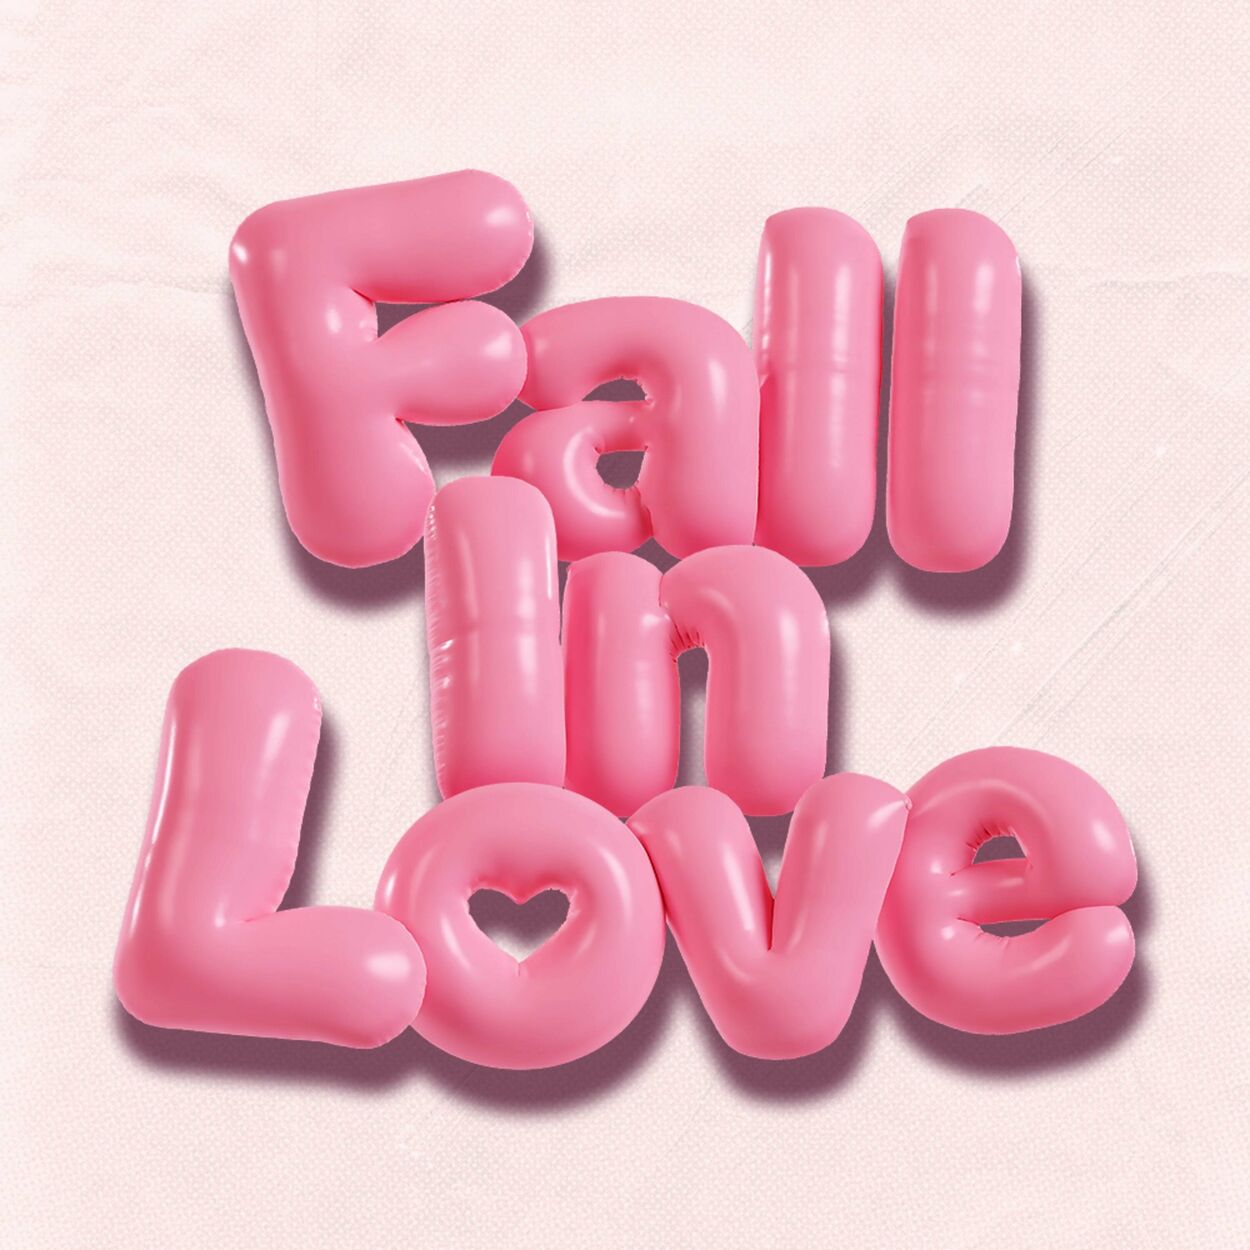 nofinale – Fall In Love – Single